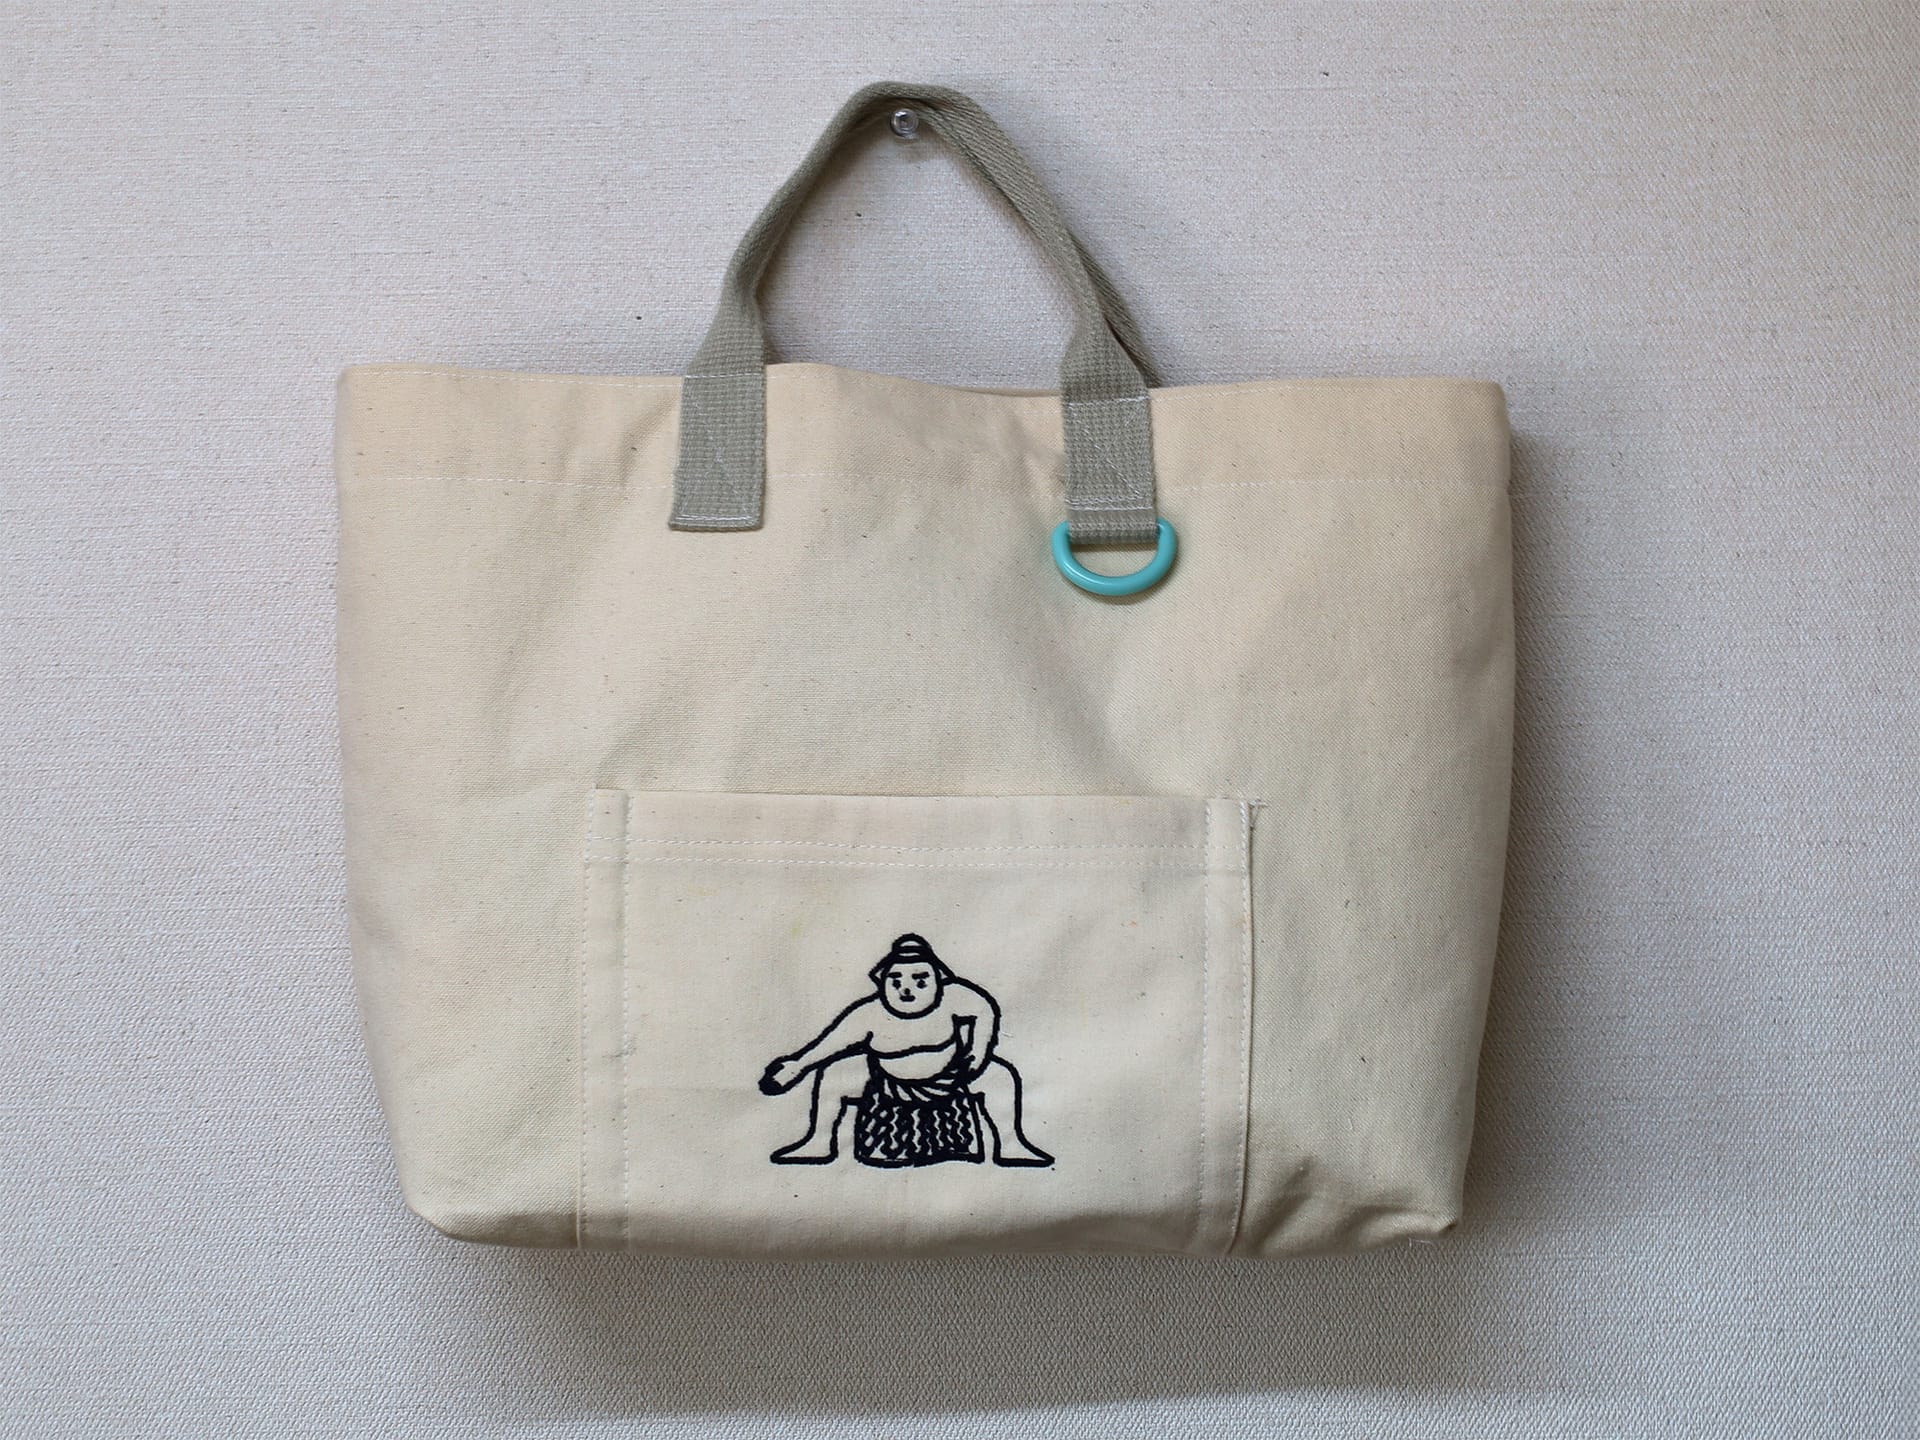 新潟市西蒲区お直しお店の「ぼんぼんぷらん」のホームページで使用する画像です。アイキャッチ画像「カスタム帆布トートバッグのご紹介」です。